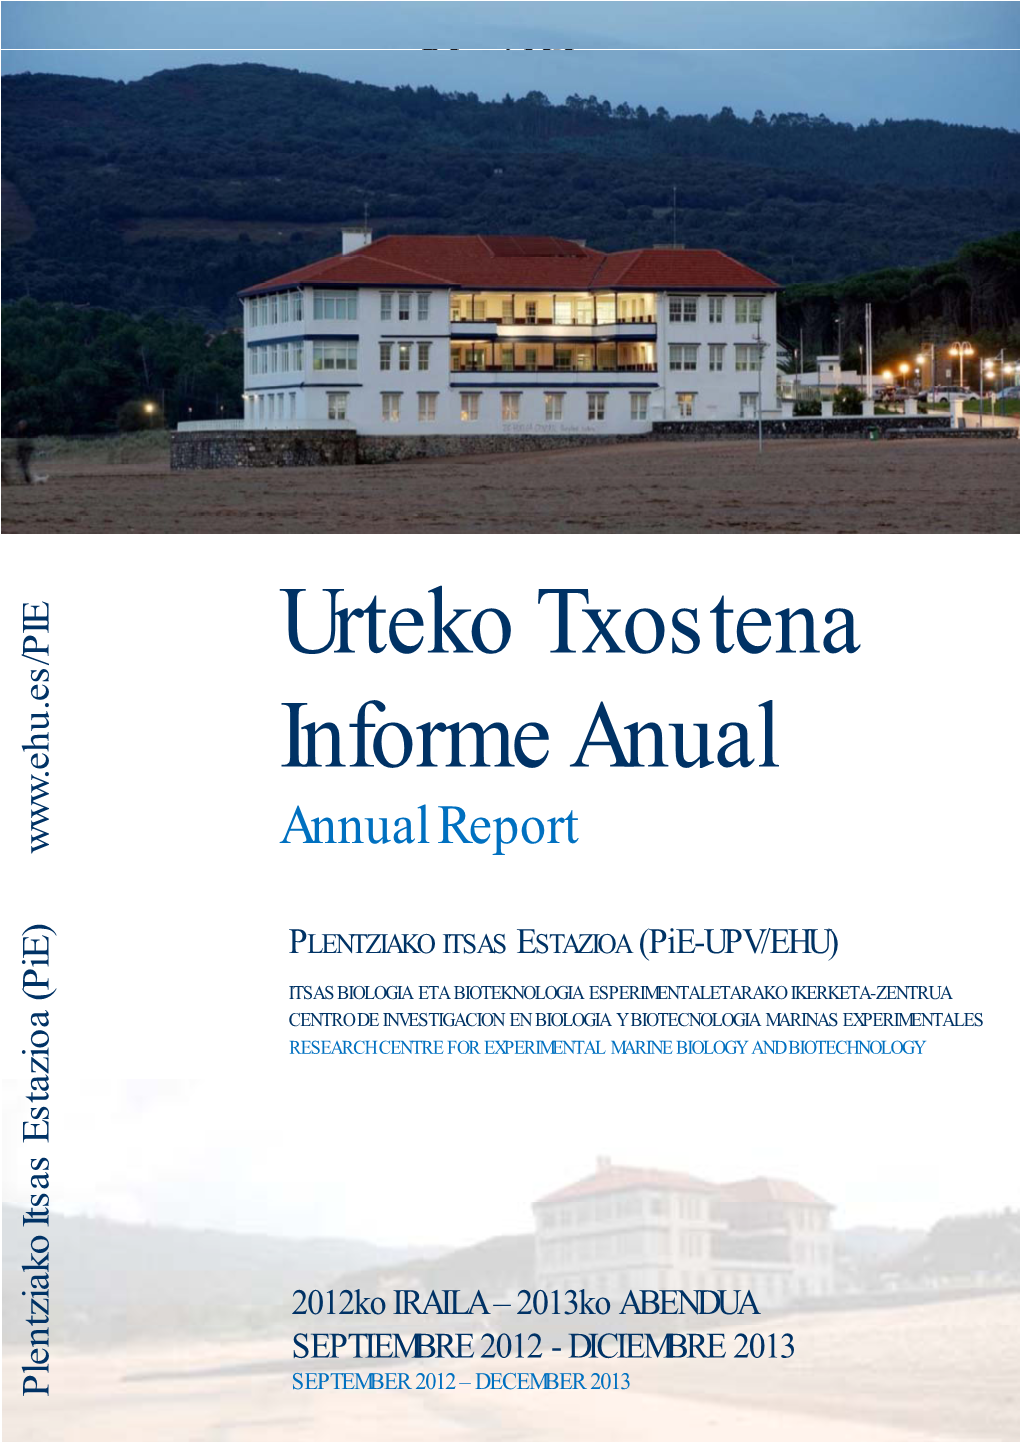 Urteko Txostena Informe Anual